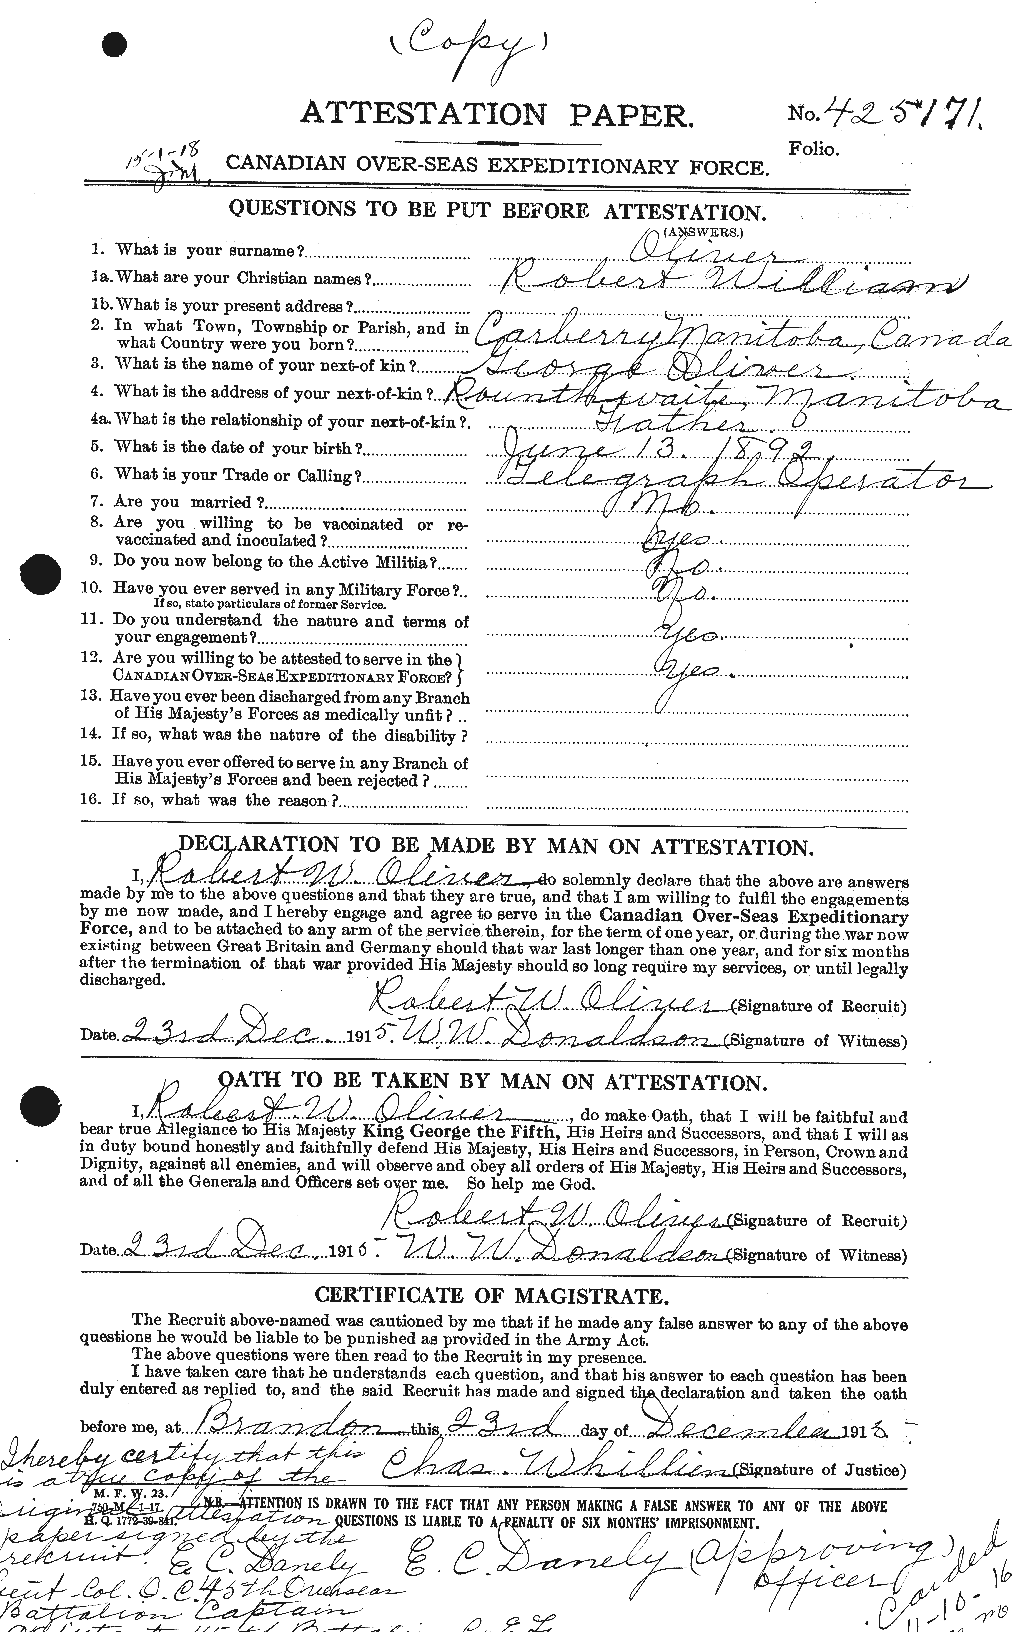 Dossiers du Personnel de la Première Guerre mondiale - CEC 555492a